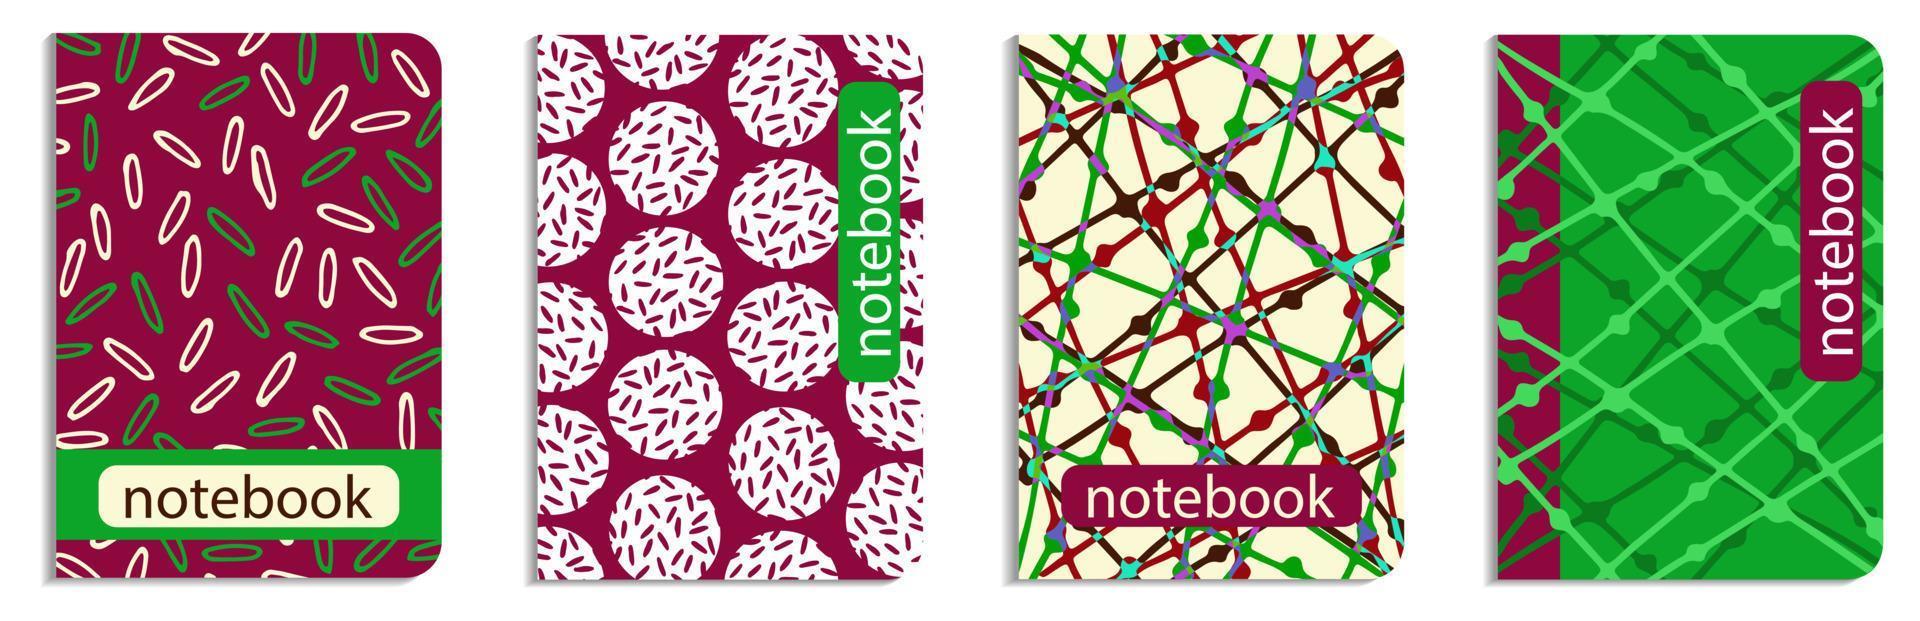 vier patroonomslag van notebook. set kleurrijke abstracte pagina a4 ontwerp voor dagboek, planner, boek. doodle hand getrokken, vectorillustratie. vector